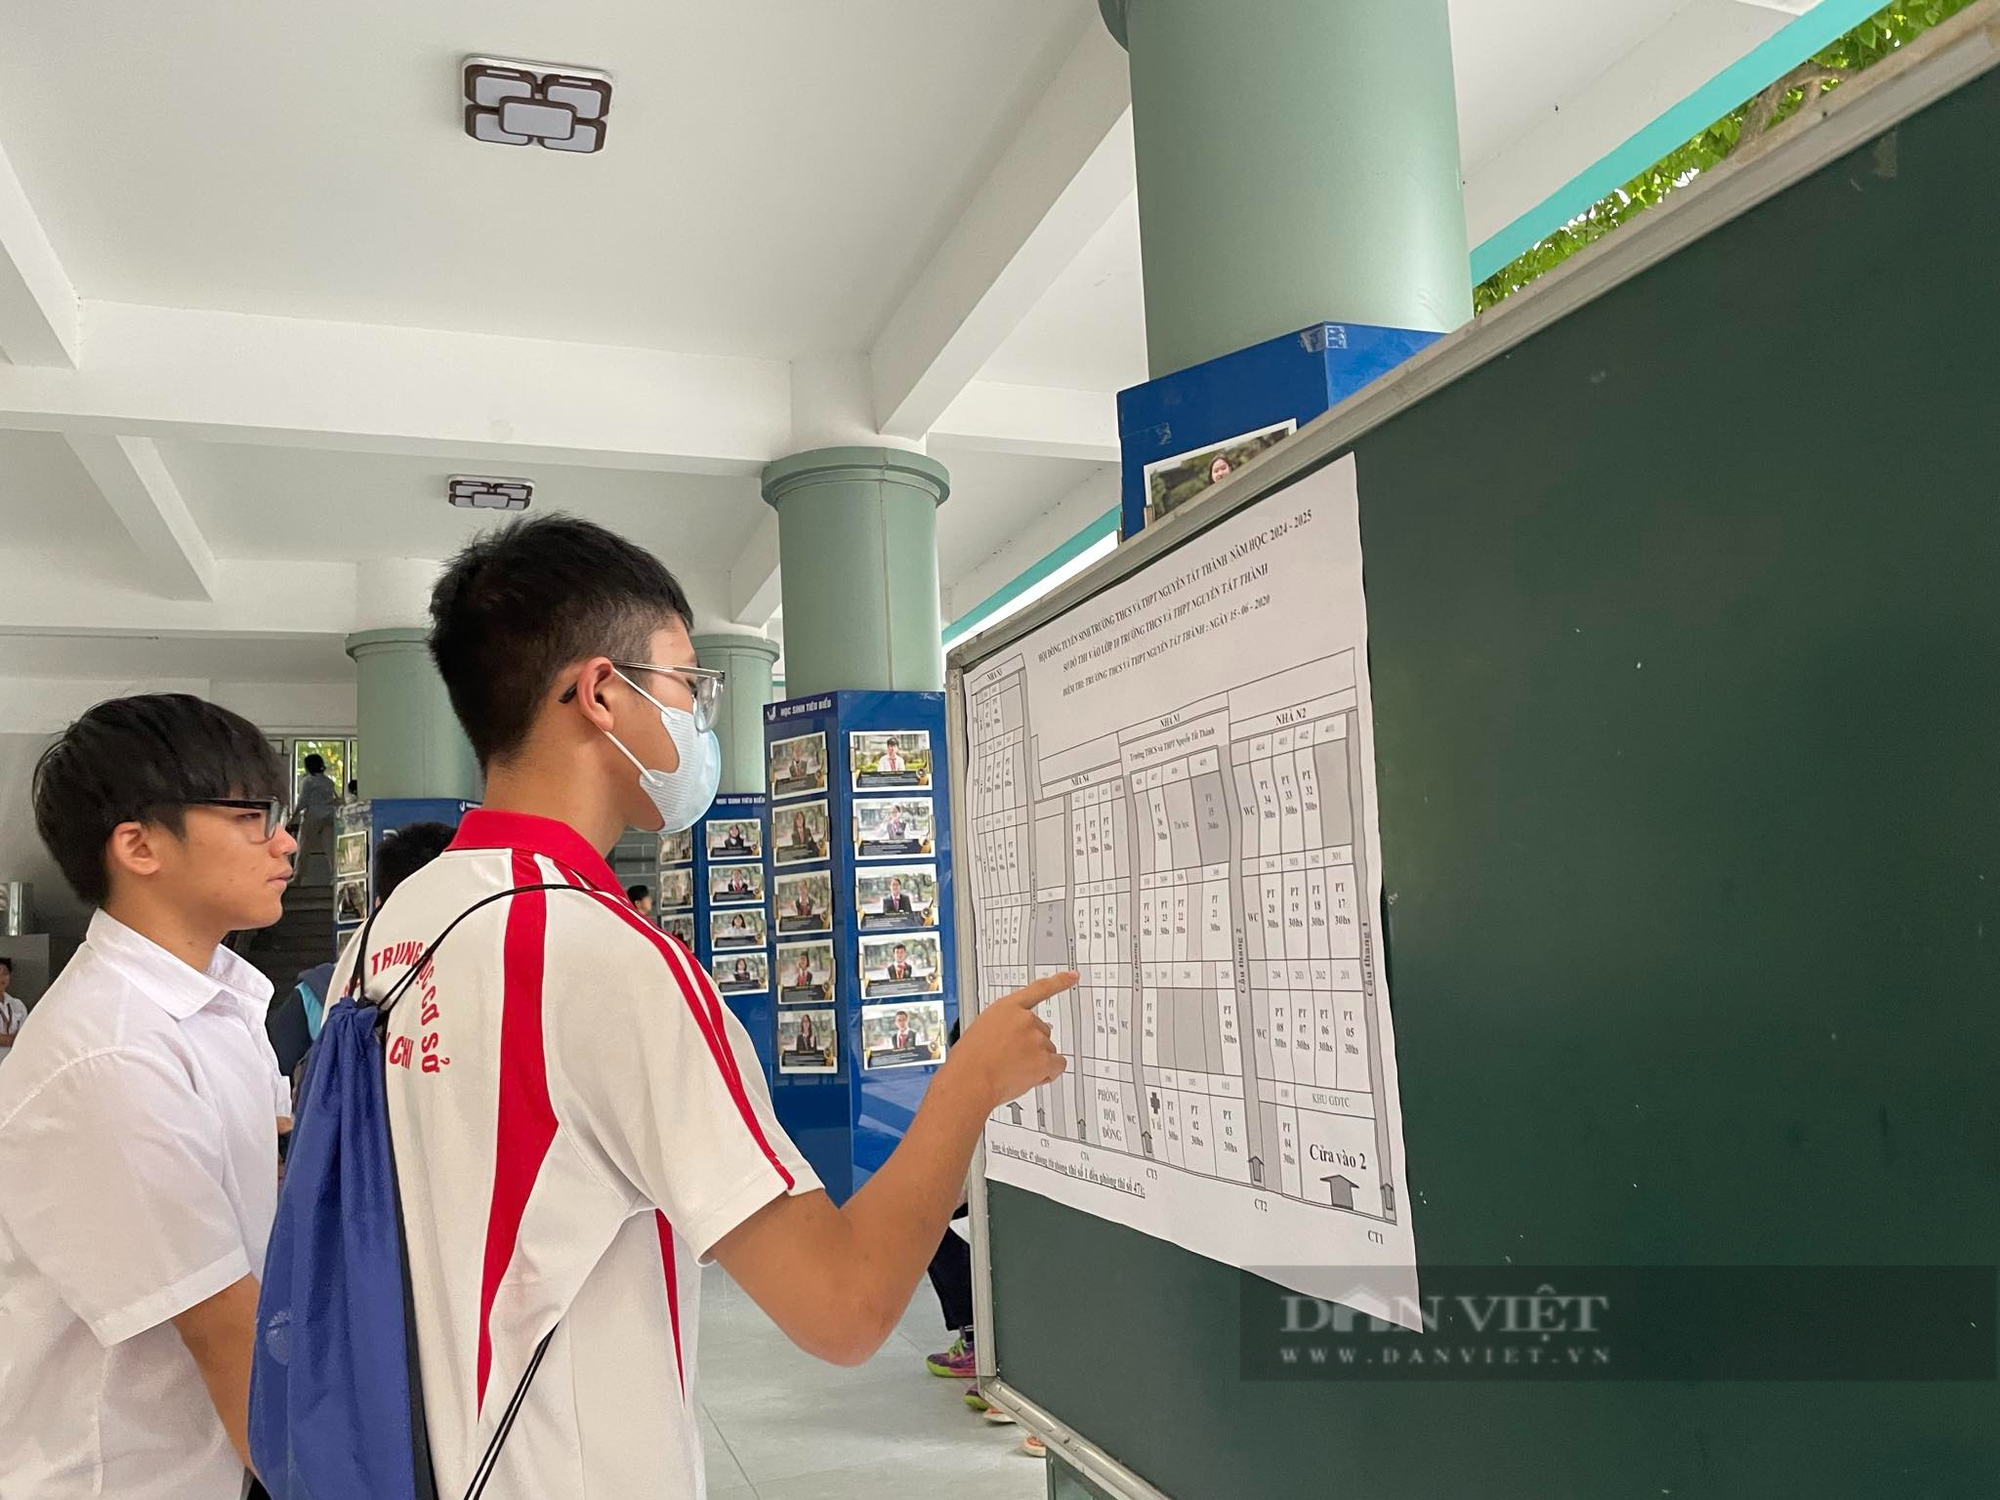 Trường cuối cùng ở Hà Nội tổ chức thi lớp 10: Tăng chỉ tiêu nhưng tỉ lệ chọi vẫn cao "chóng mặt"- Ảnh 2.